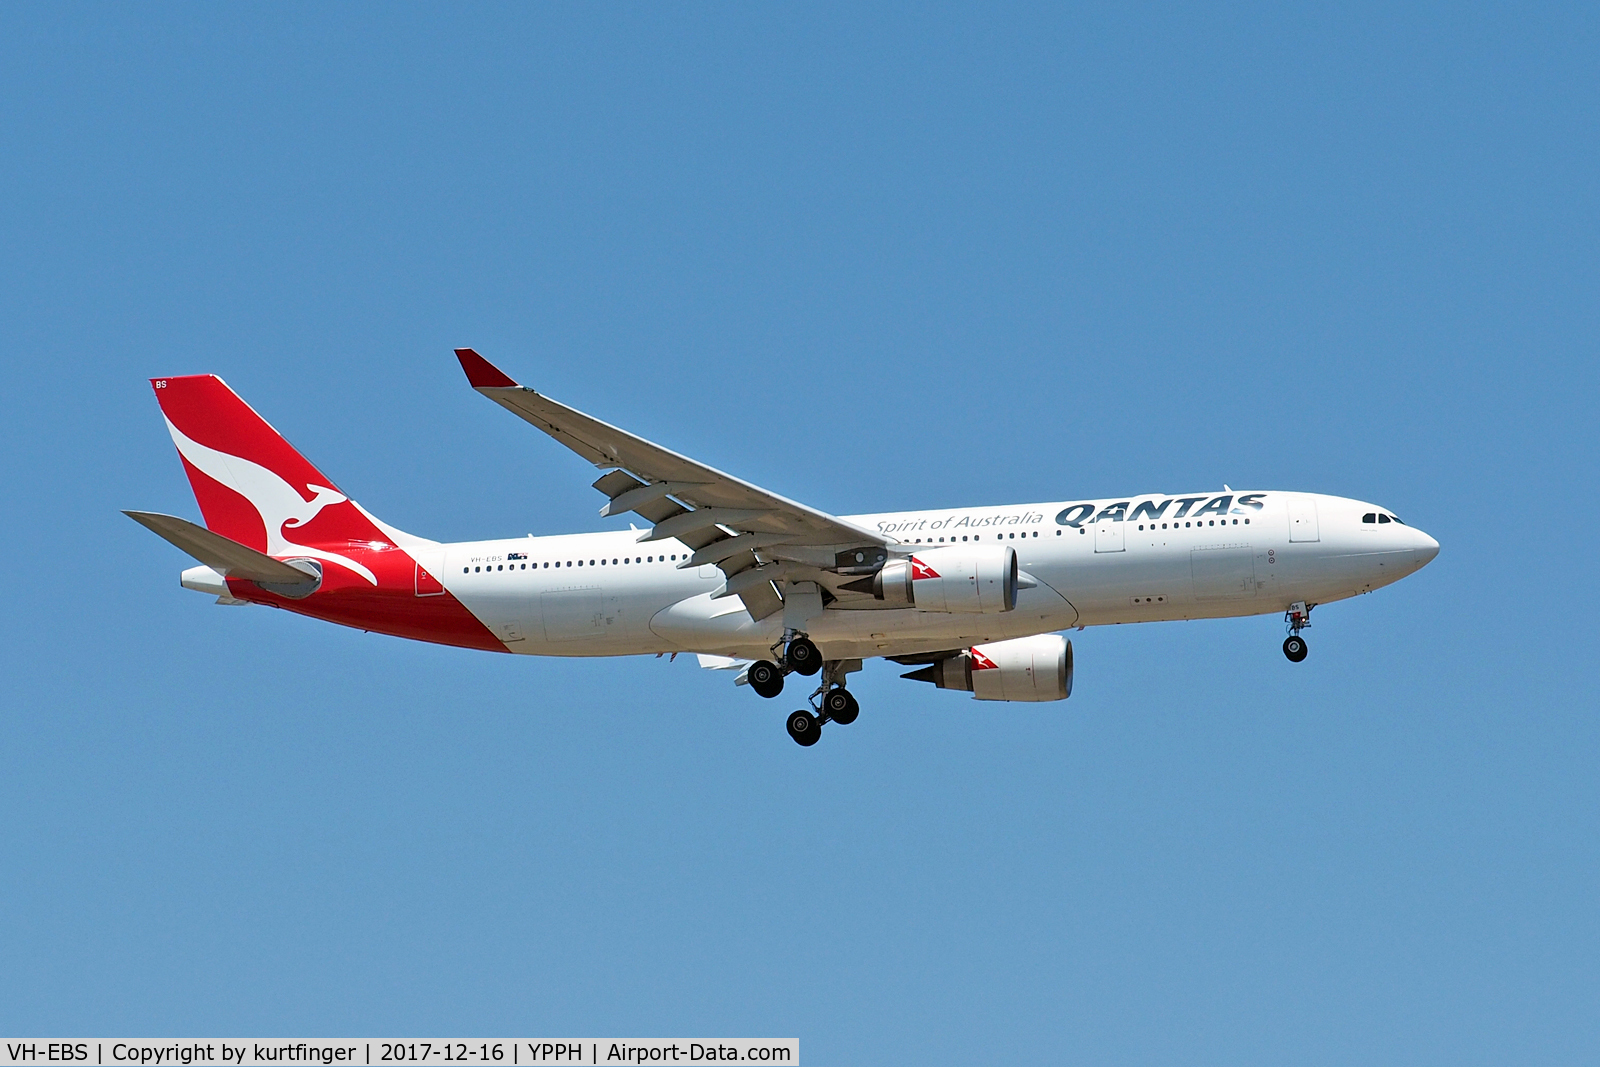 VH-EBS, 2011 Airbus A330-202 C/N 1258, Airbus A330-202 Qantas VH-EBS, final R21 YPPH 161217